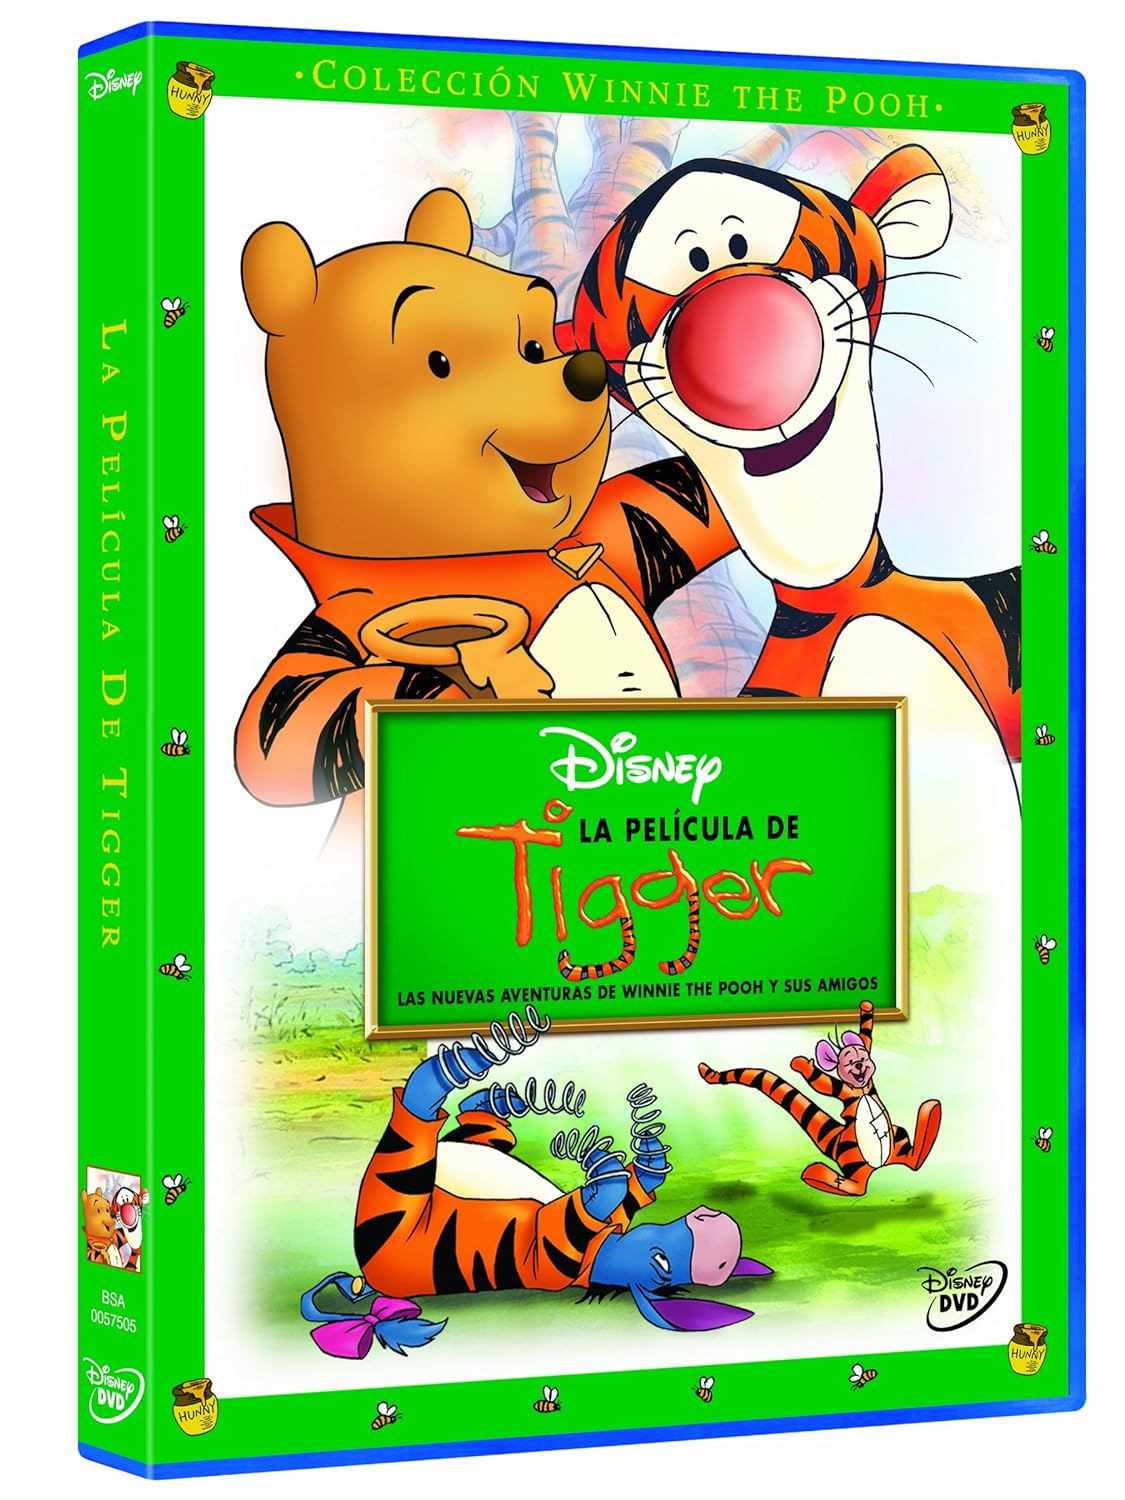 Película De Tigger: Las Nuevas Aventuras De Winnie The Pooh Y Sus Amigos [DVD]
